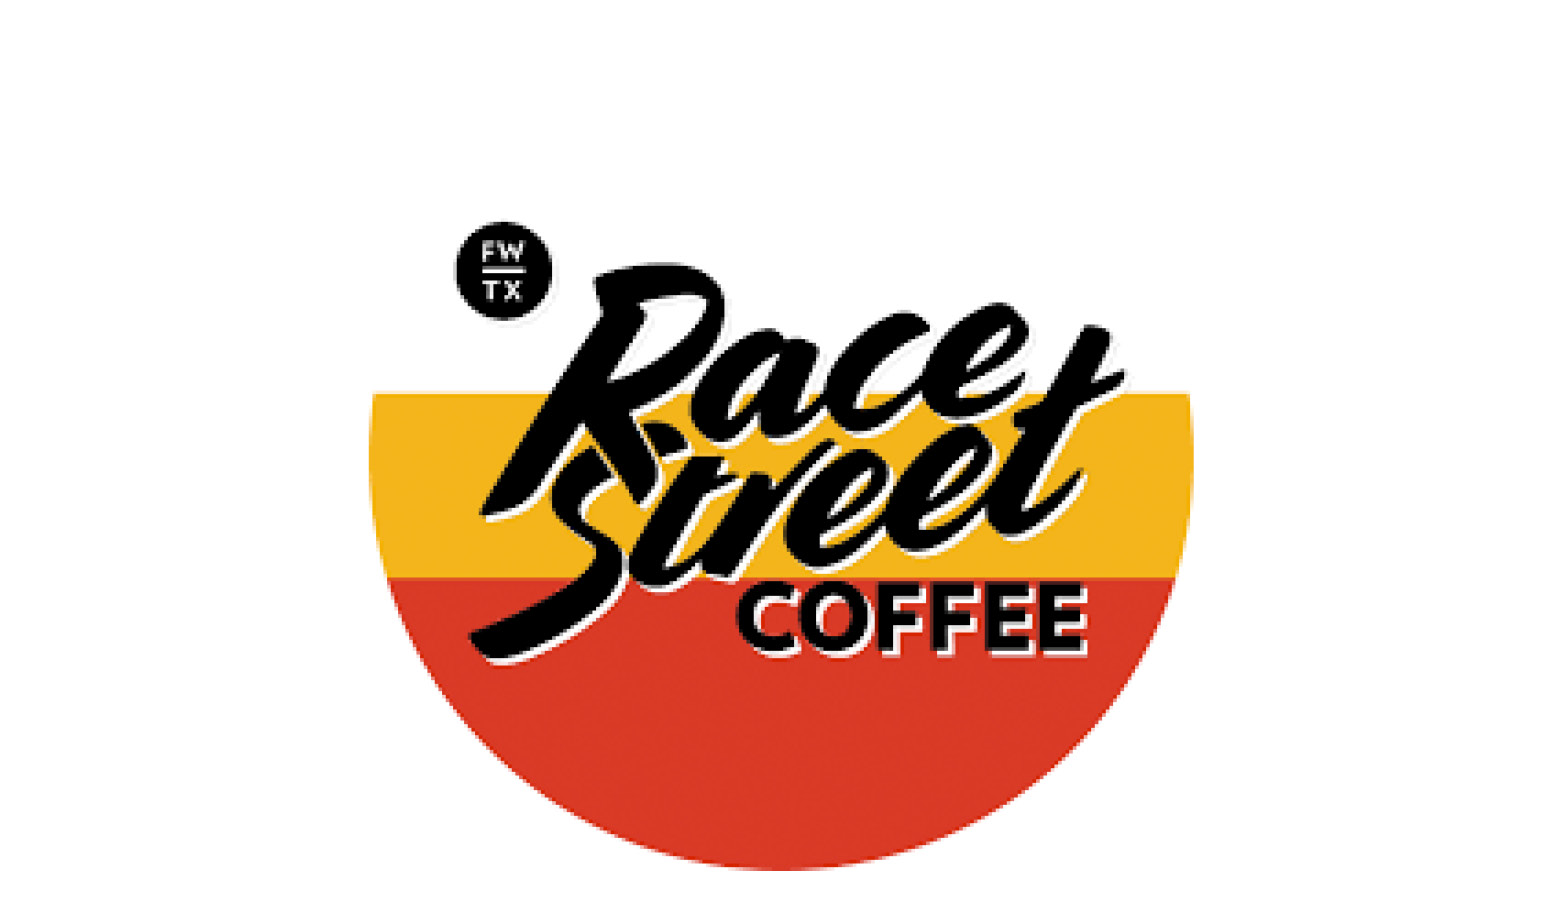 restaurant logo_Race street